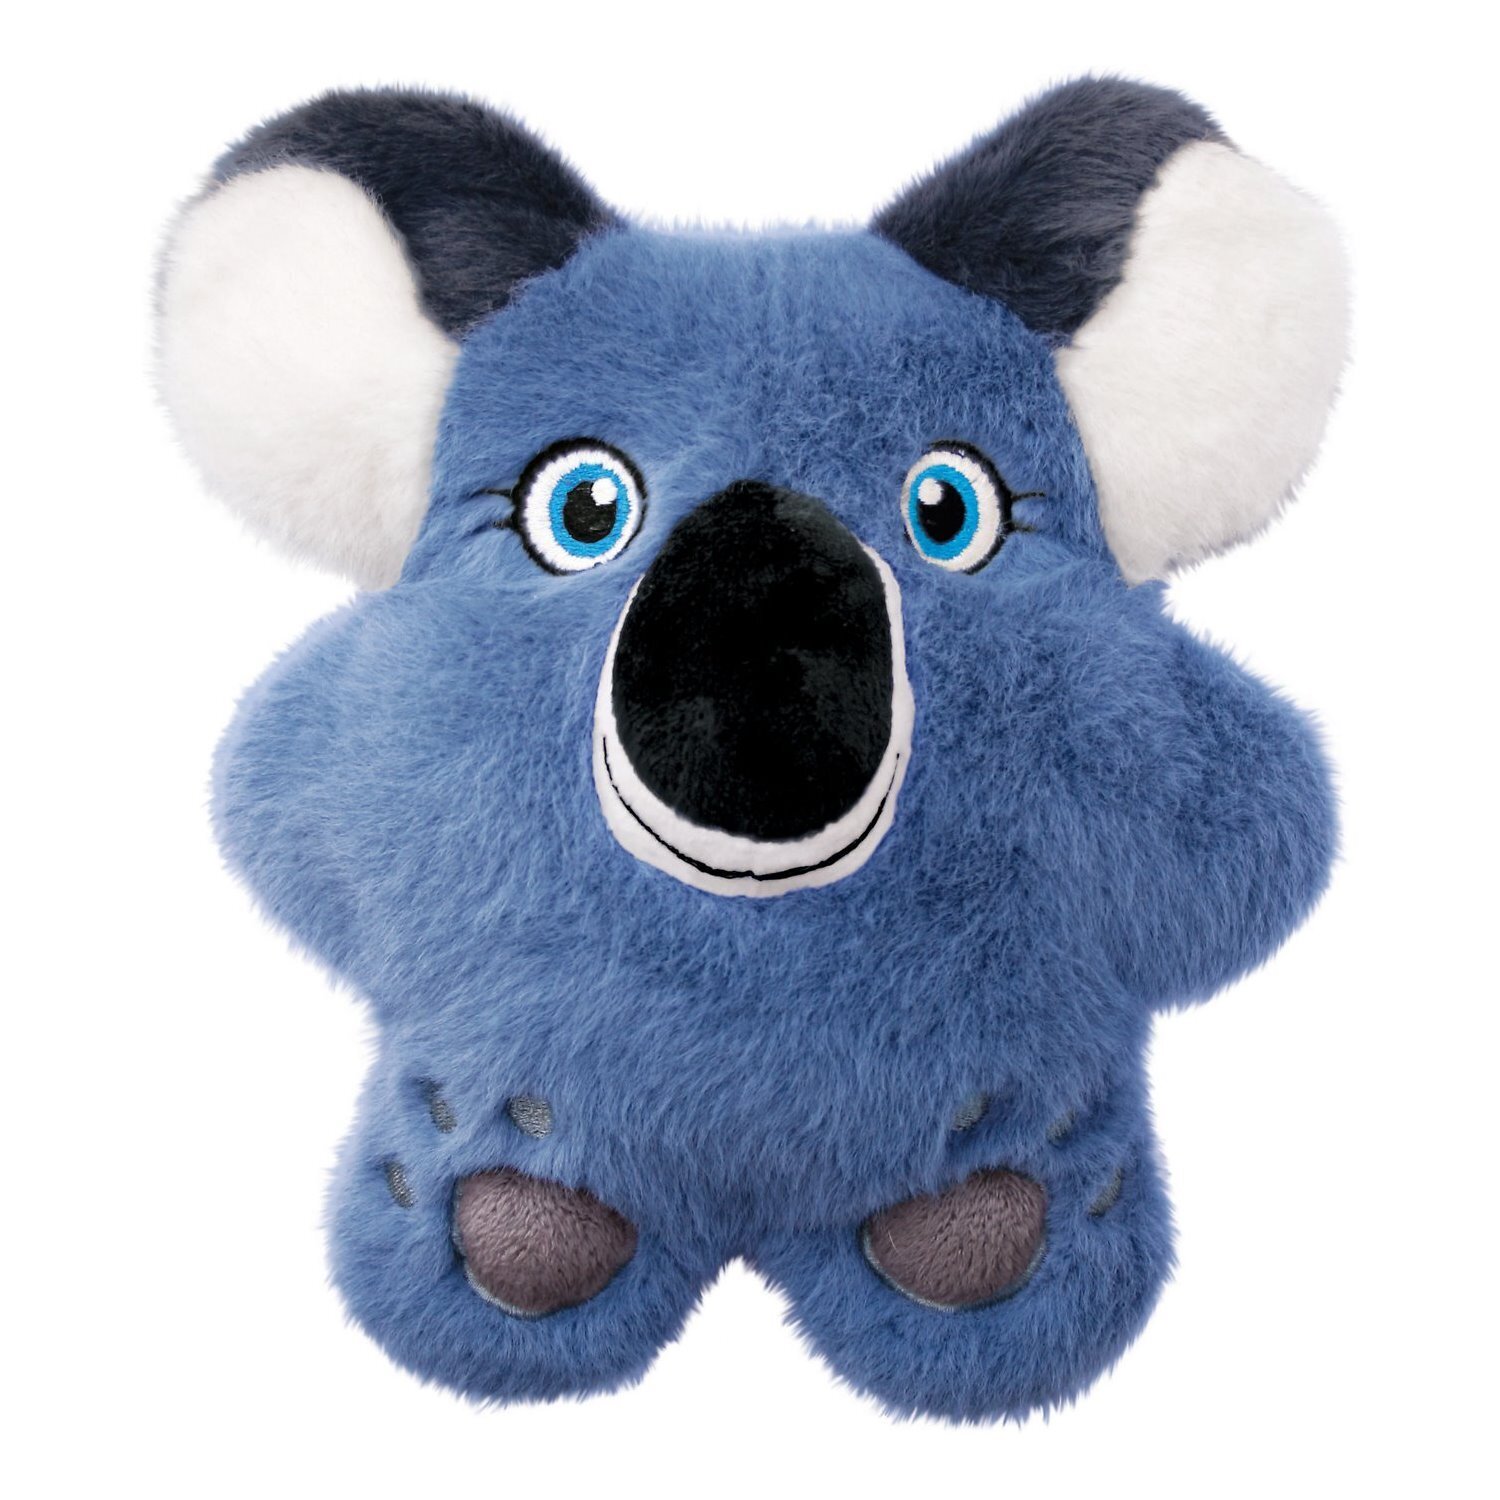 KONG Snuzzles Plush Squeaker Dog Toy - Koala  - Pack of 3 image 1